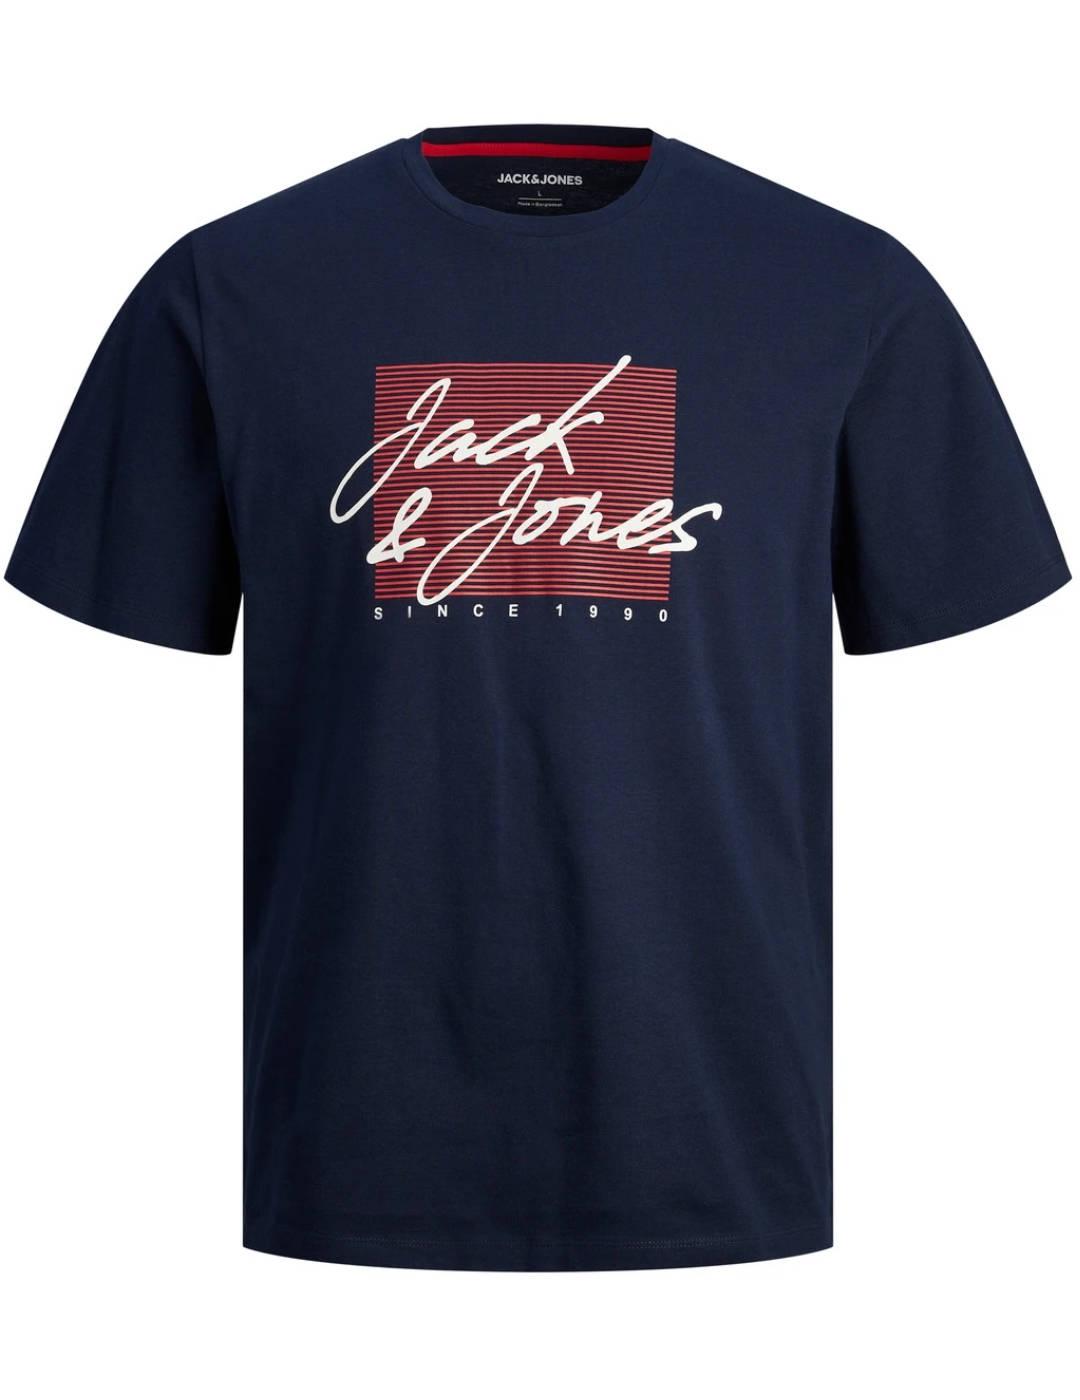 Camiseta Jack&Jones Zuri marino manga corta para hombre